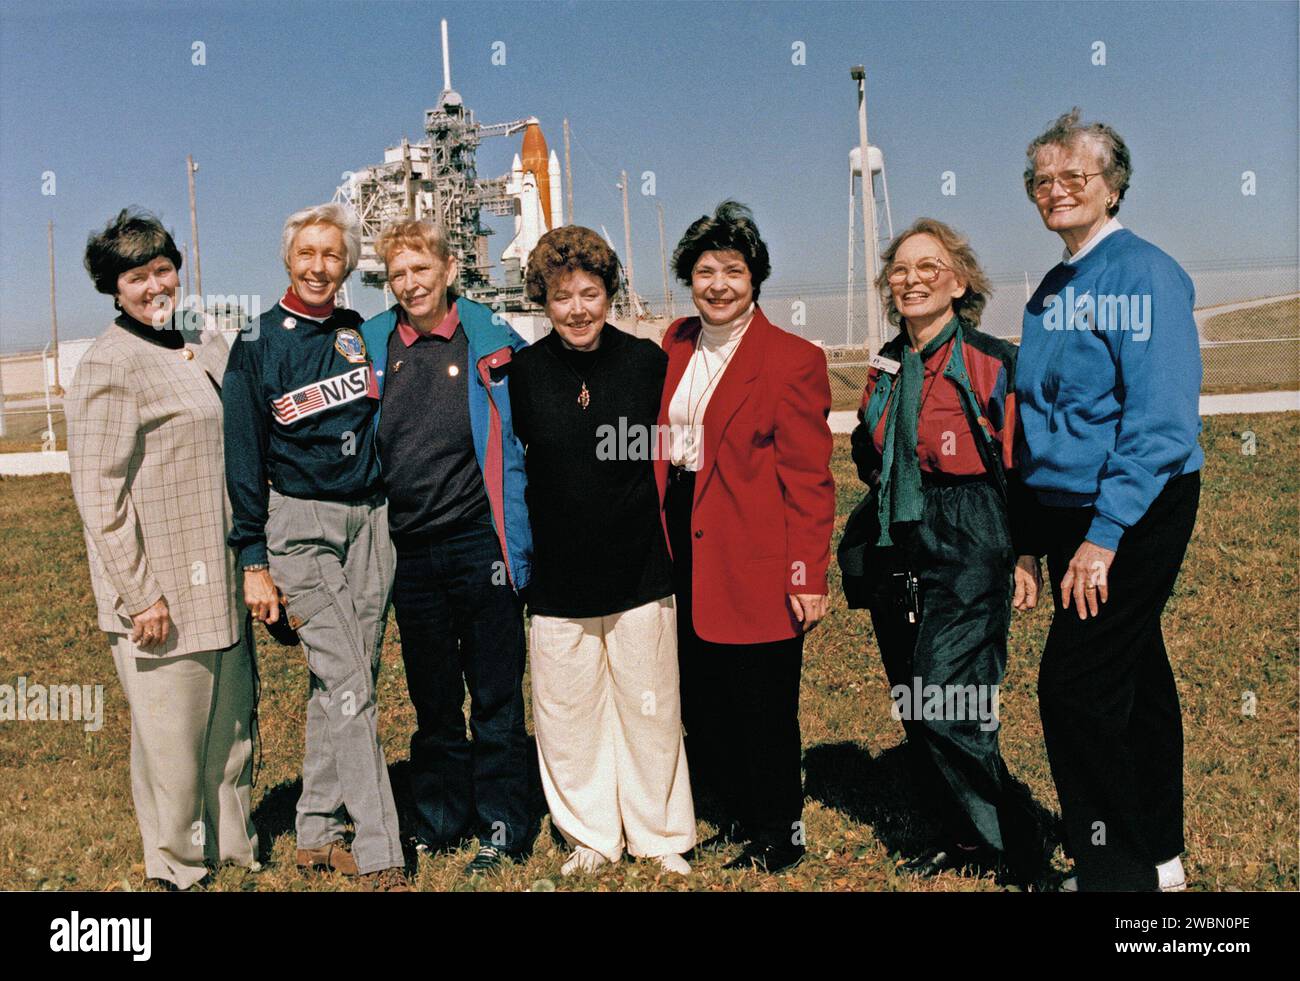 CAP CANAVERAL, Floride. -- exubérante et ravie d'être au Kennedy Space Center, sept femmes qui aspiraient autrefois à voler dans l'espace se tiennent à l'extérieur de Launch Pad 39B près de la navette spatiale Discovery, prêtes pour le décollage sur le premier vol de 1995. Visiter le centre spatial en tant qu'invités du pilote STS-63 Eileen Collins sont de gauche Gene Nora Jessen, Wally Funk, Jerrie Cobb, Jerri Truhill, Sarah Rutley, Myrtle Cagle et Bernice Steadman. Elles sont membres du groupe de femmes Mercury 13 qui se sont entraînées pour devenir astronautes pour le premier programme de vols spatiaux humains de l'Amérique au début des années 1960 Bien que le M Banque D'Images